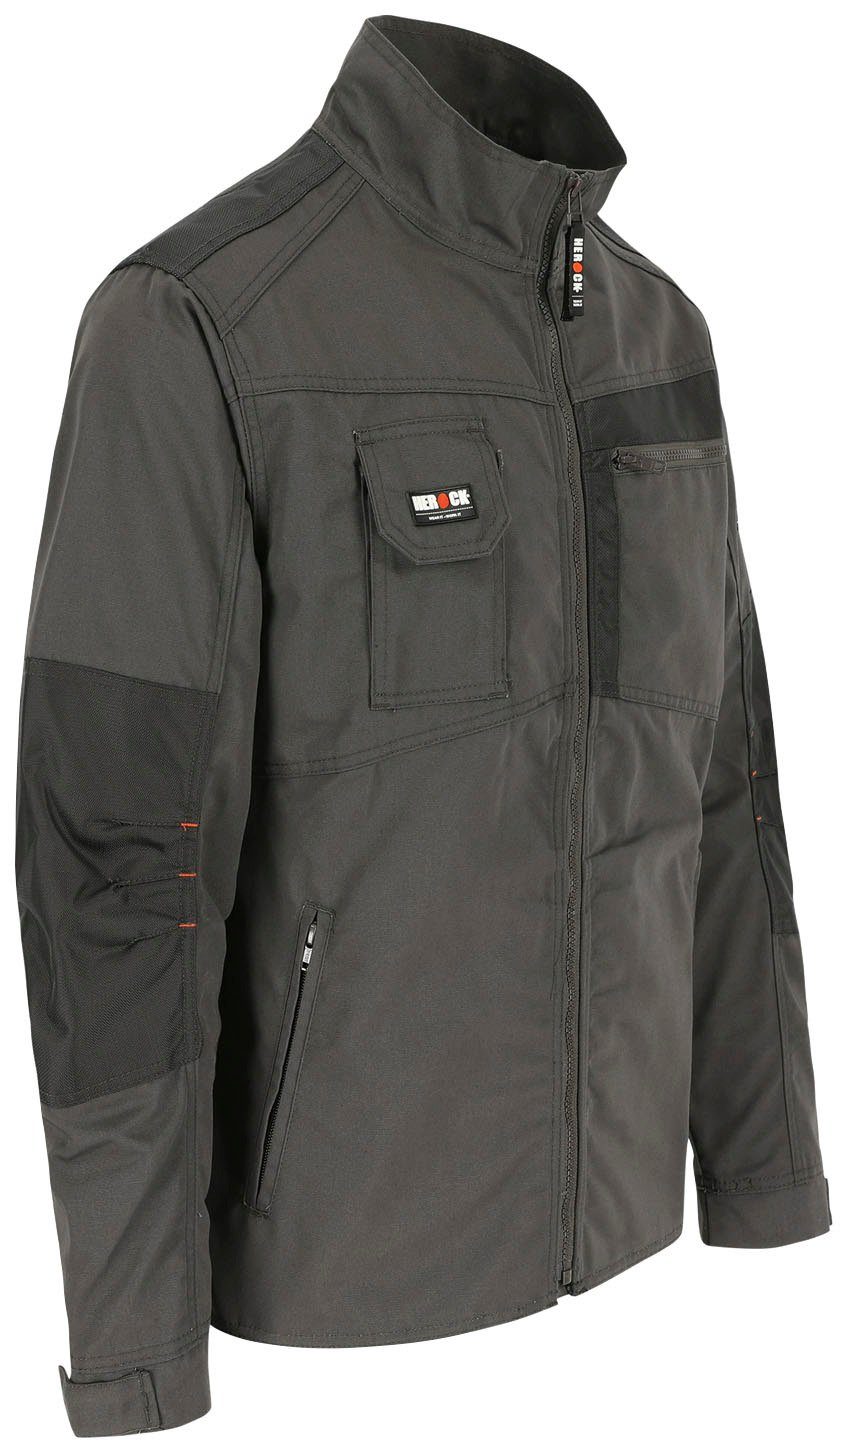 Wasserabweisend - Jacke - Arbeitsjacke Herock robust Anzar grau verstellbare 7 - Taschen Bündchen